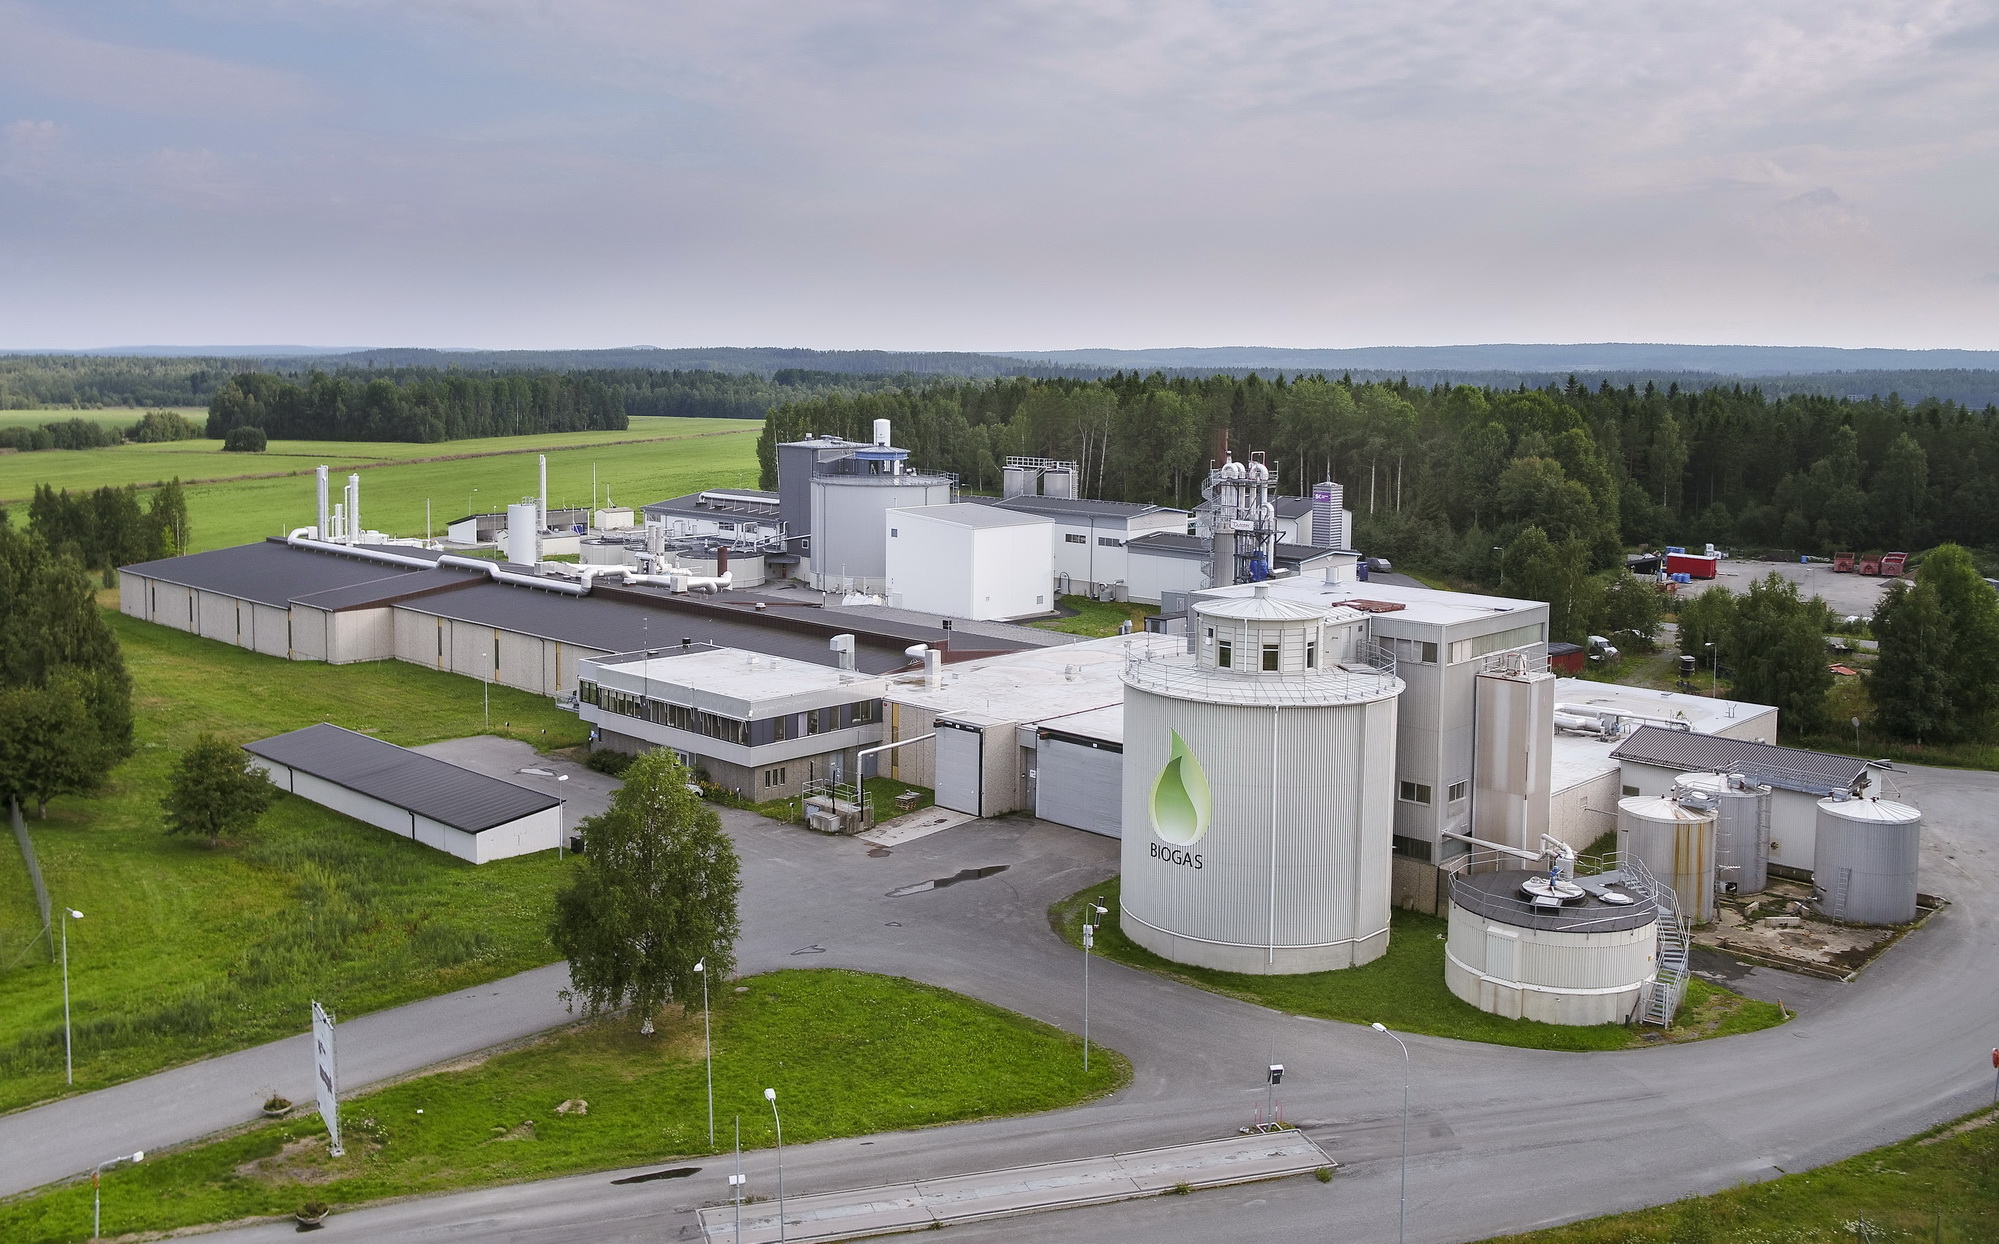 Chất thải sinh học - như chất thải thực phẩm - có thể được sử dụng để sản xuất khí sinh học, làm nhiên liệu và để sưởi ấm hoặc sản xuất điện. Thụy Điển là quốc gia hàng đầu về biến chất thải được thu gom trở thành năng lượng. (Ảnh: Ulf Grünbaum/Imagebank.sweden.se)